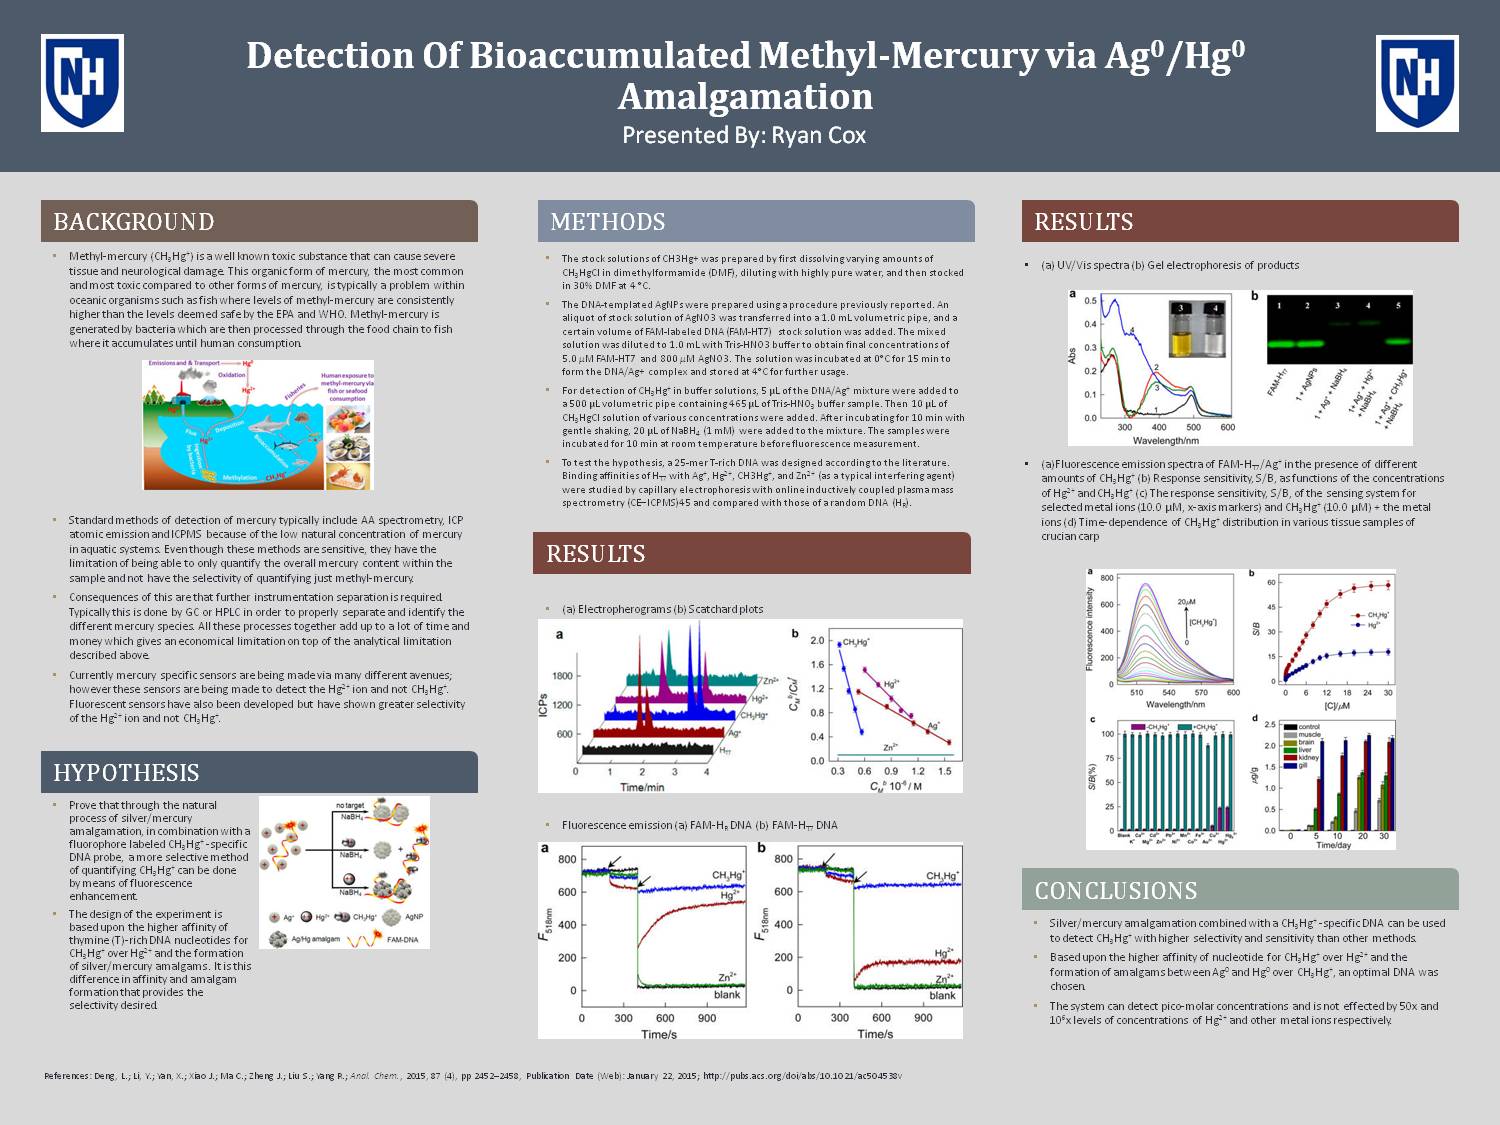 Detection Of Bioaccumulated Methyl-Mercury Via Ag0/Hg0 Amalgamation by rar66